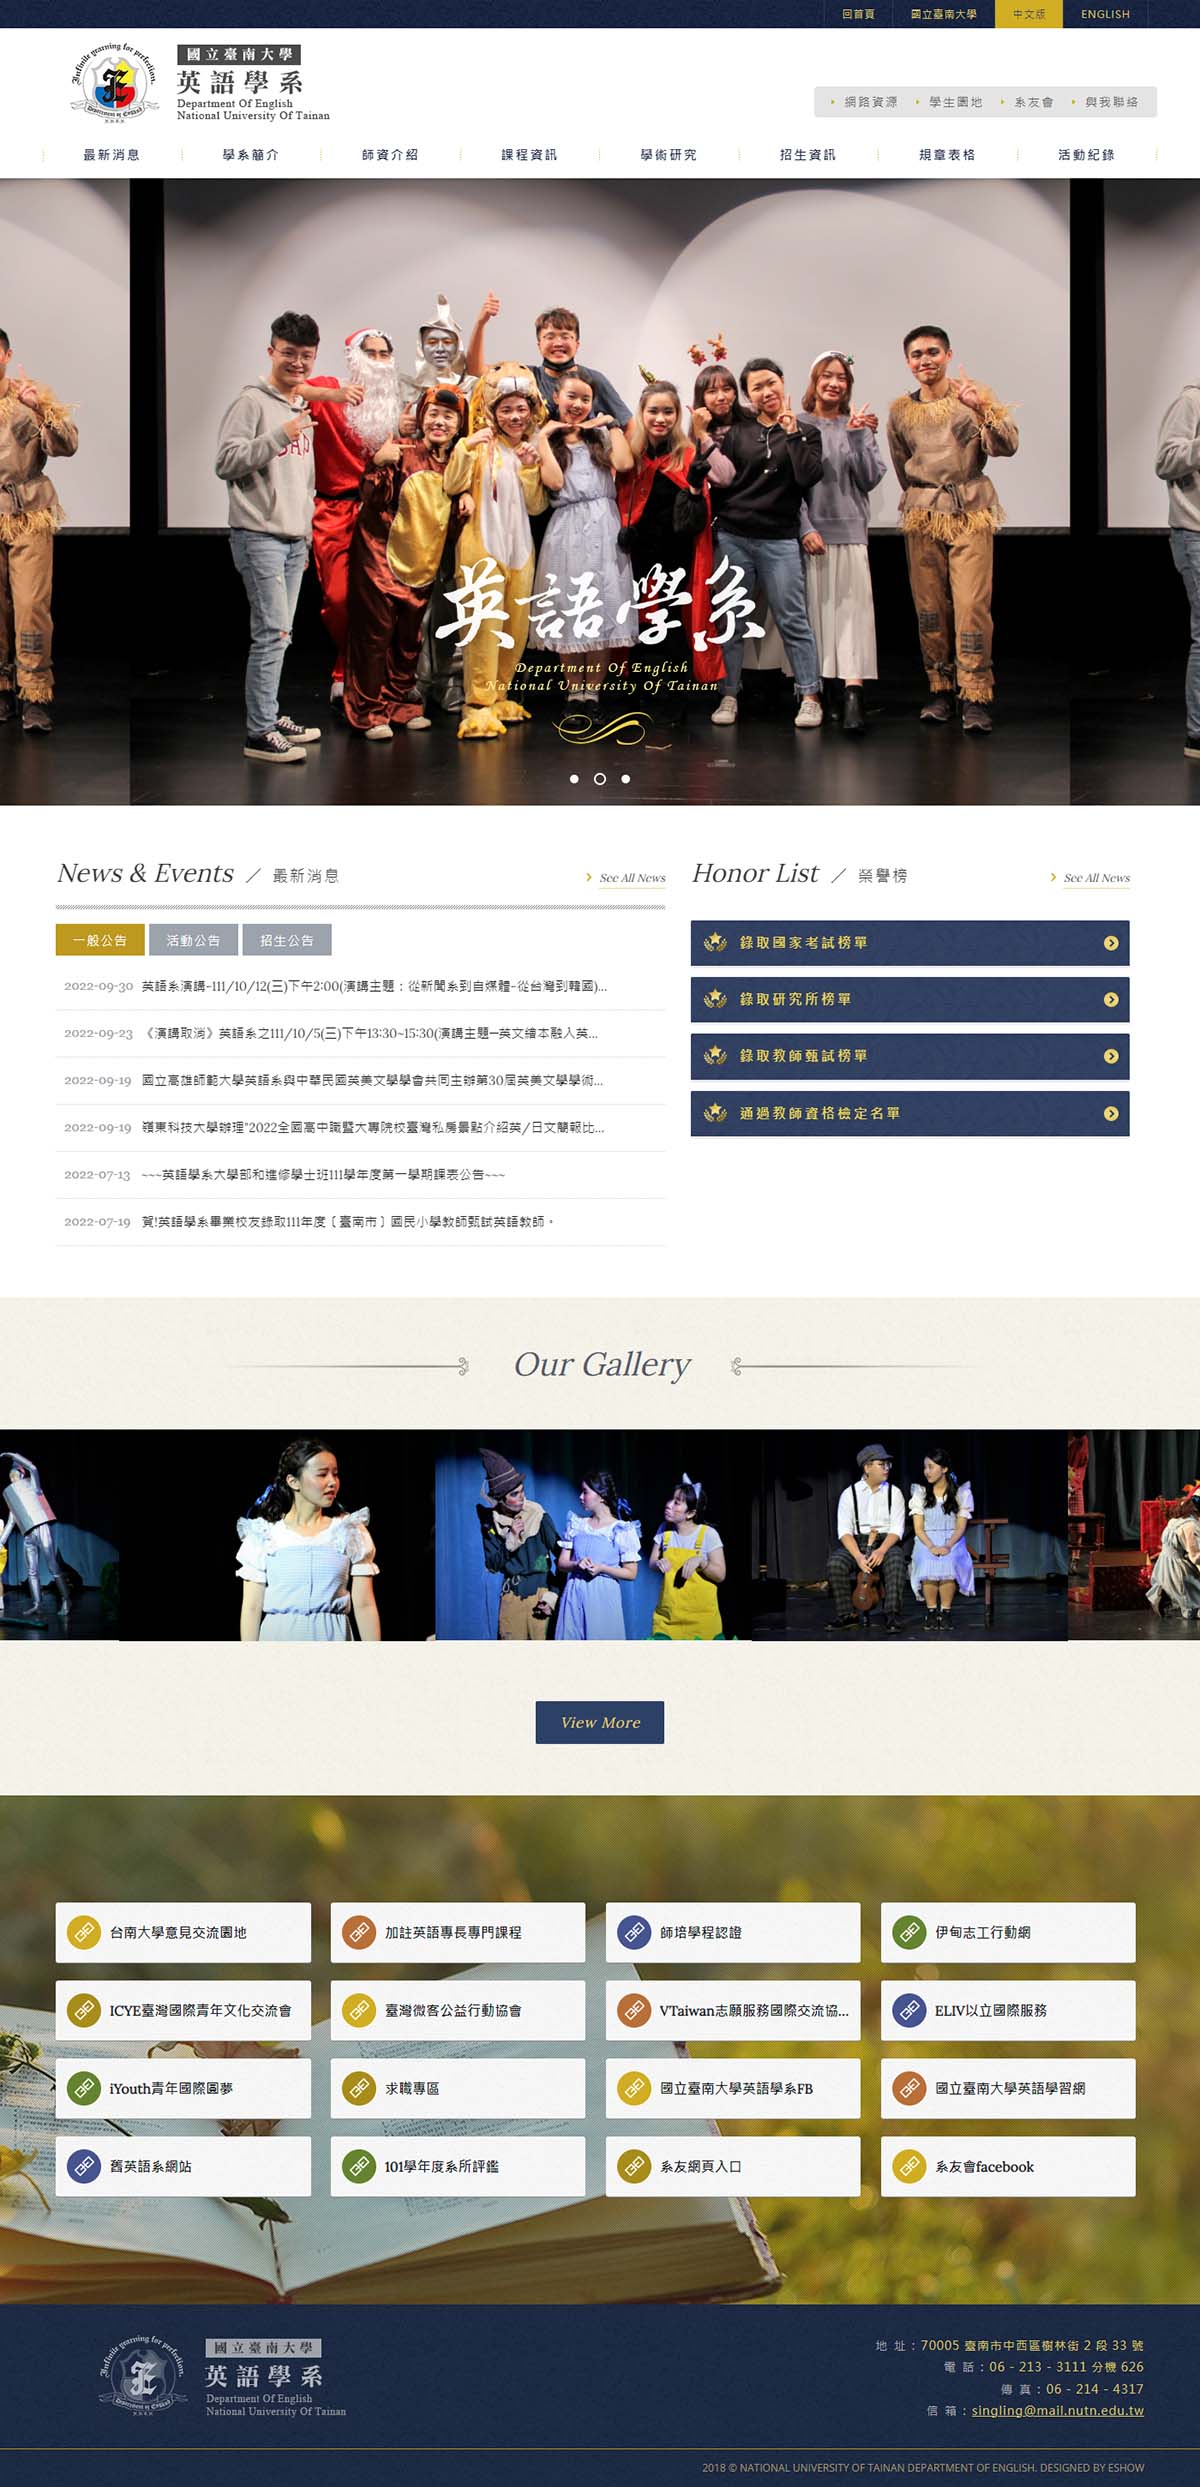 國立臺南大學英語學系 學校系所網站規劃設計專案
